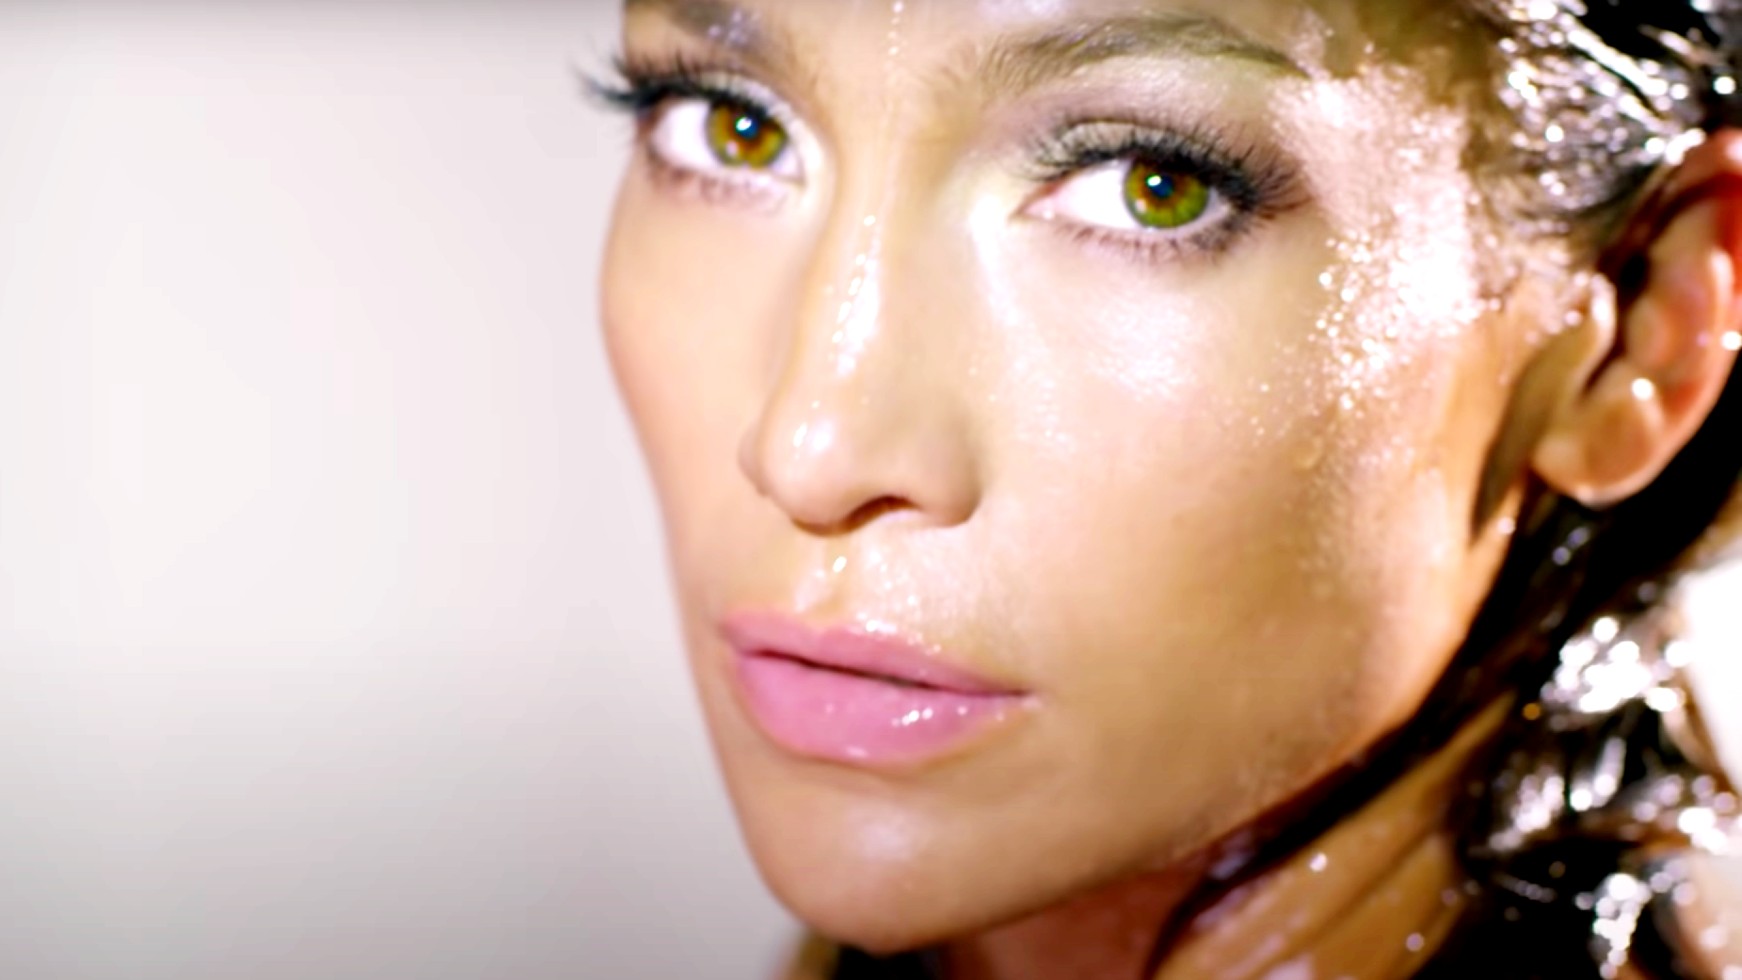 J Lo Is Intimissimi Lingerie Brand's Ambassador